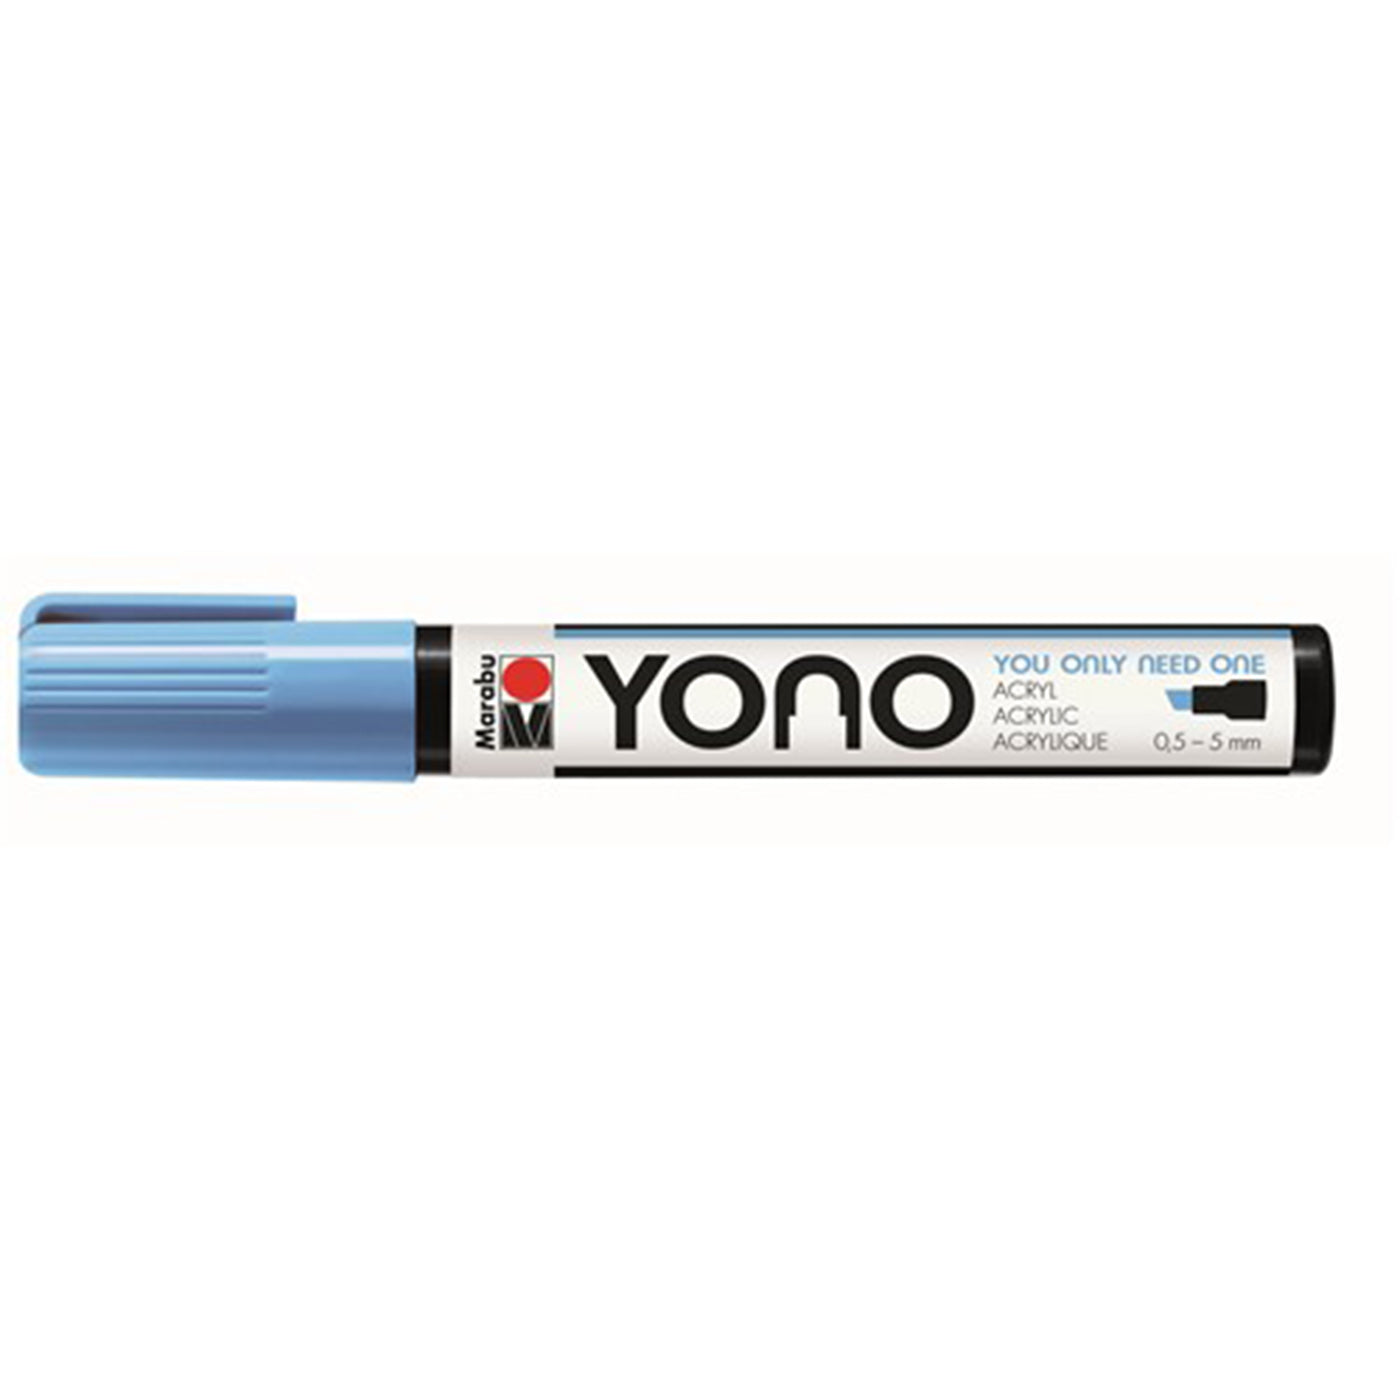 Marabu YONO Acrylic Paint Marker Chisel Tip